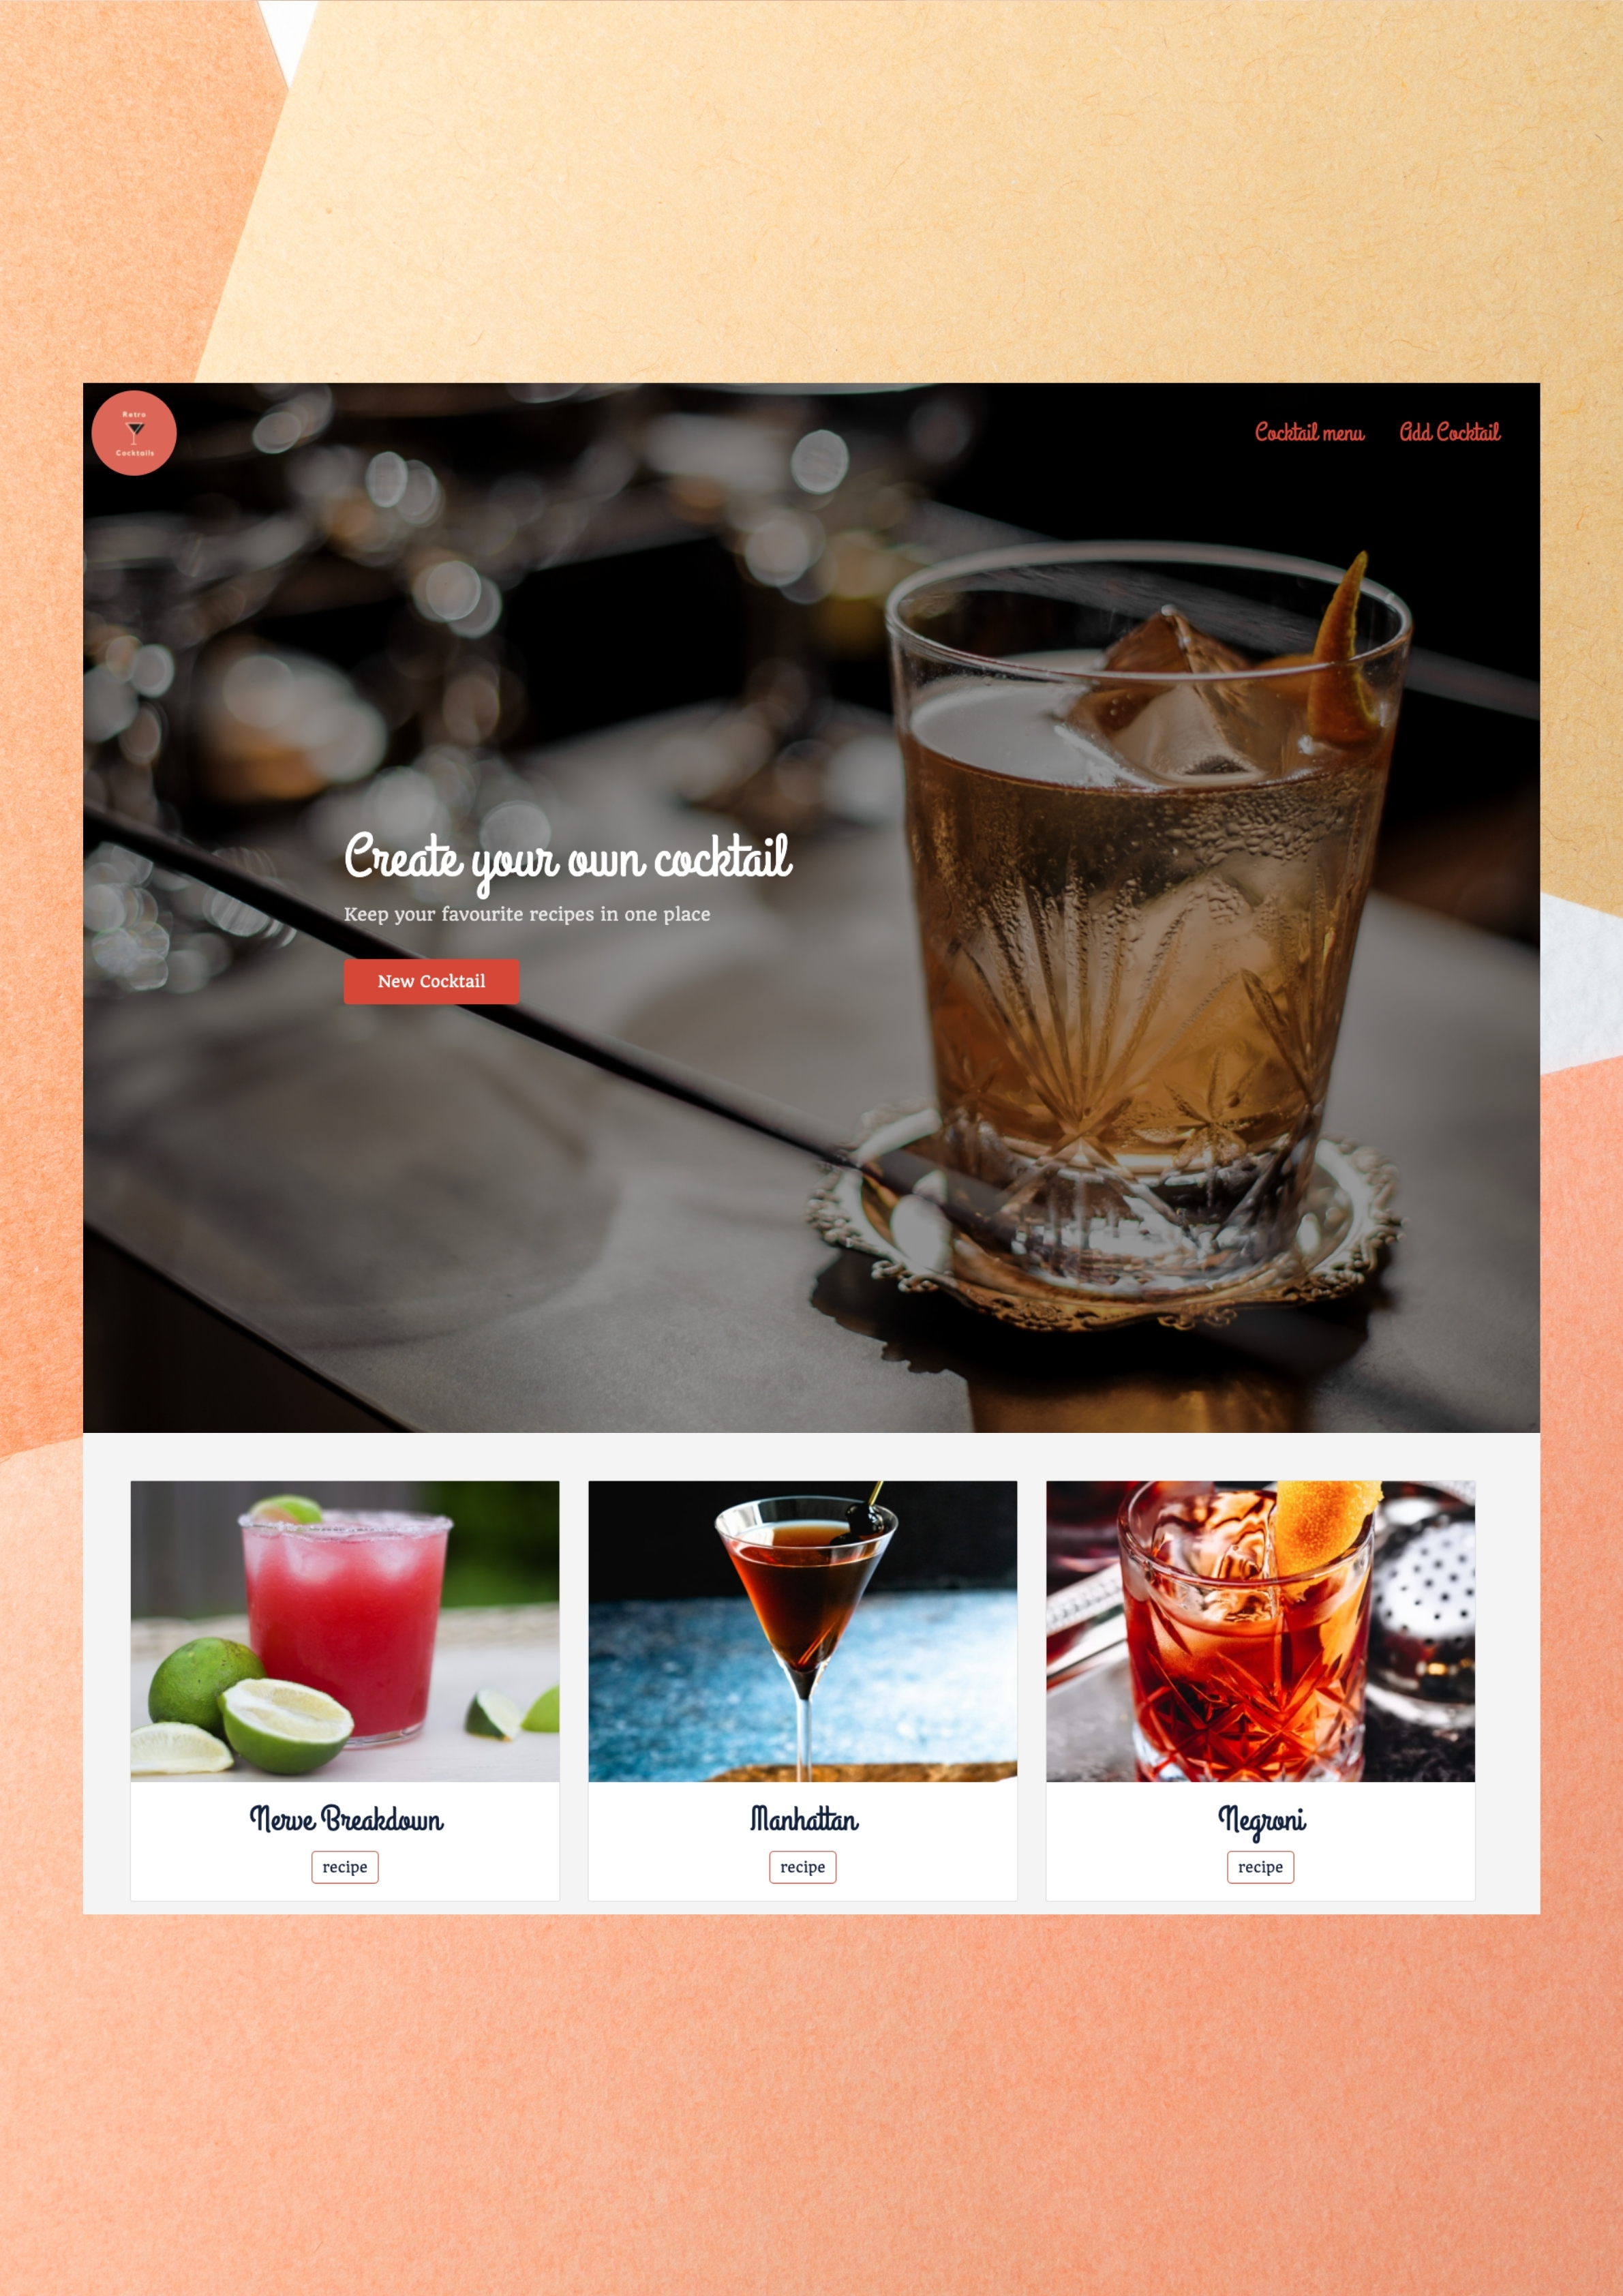 Mr Cocktail website image